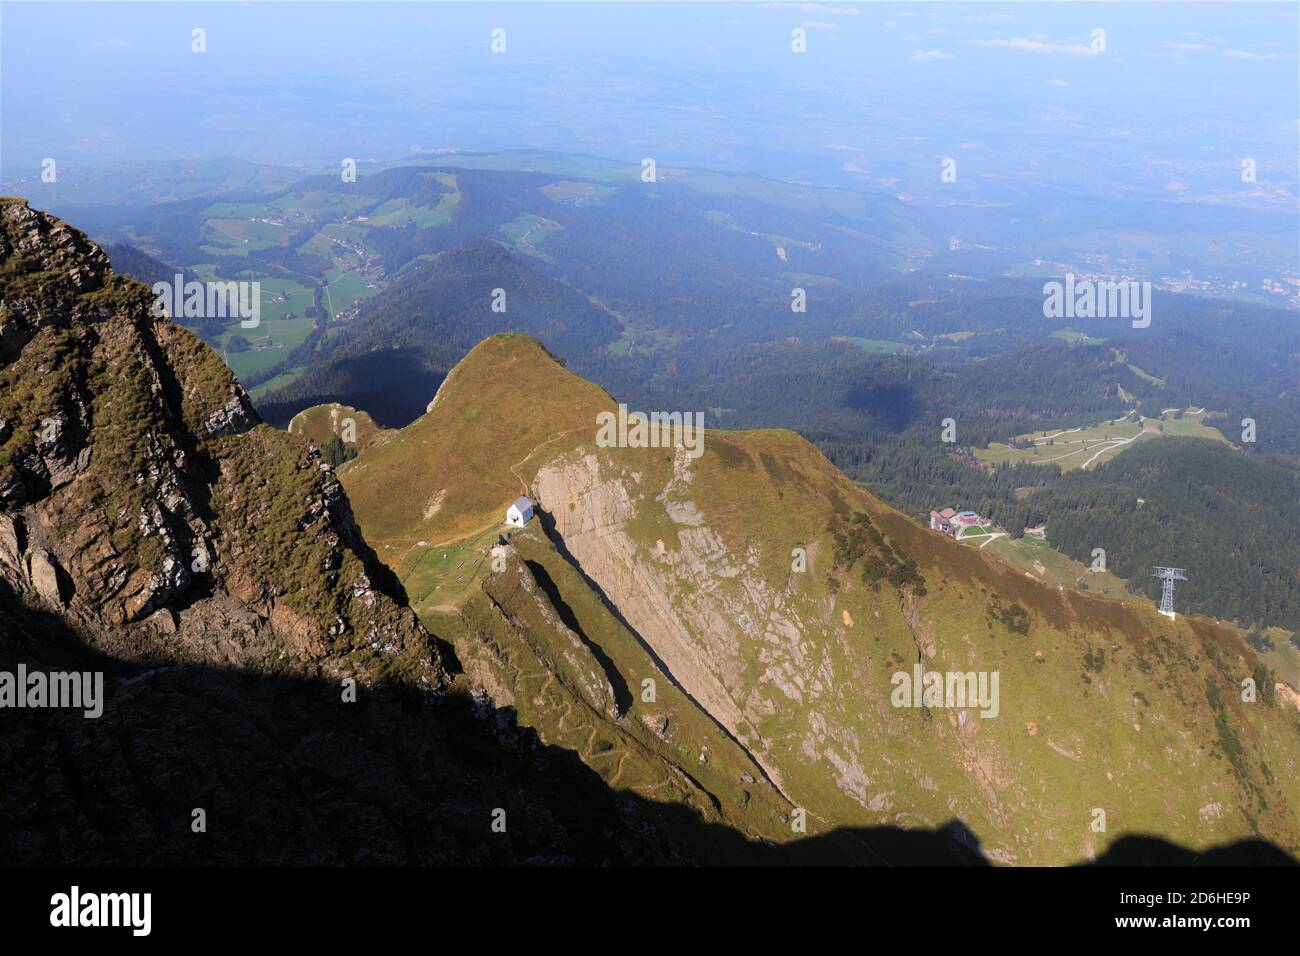 La vue de la chapelle Klimsenhorn depuis le sommet de la montagne Pilatus, Alpes suisses, Suisse Banque D'Images